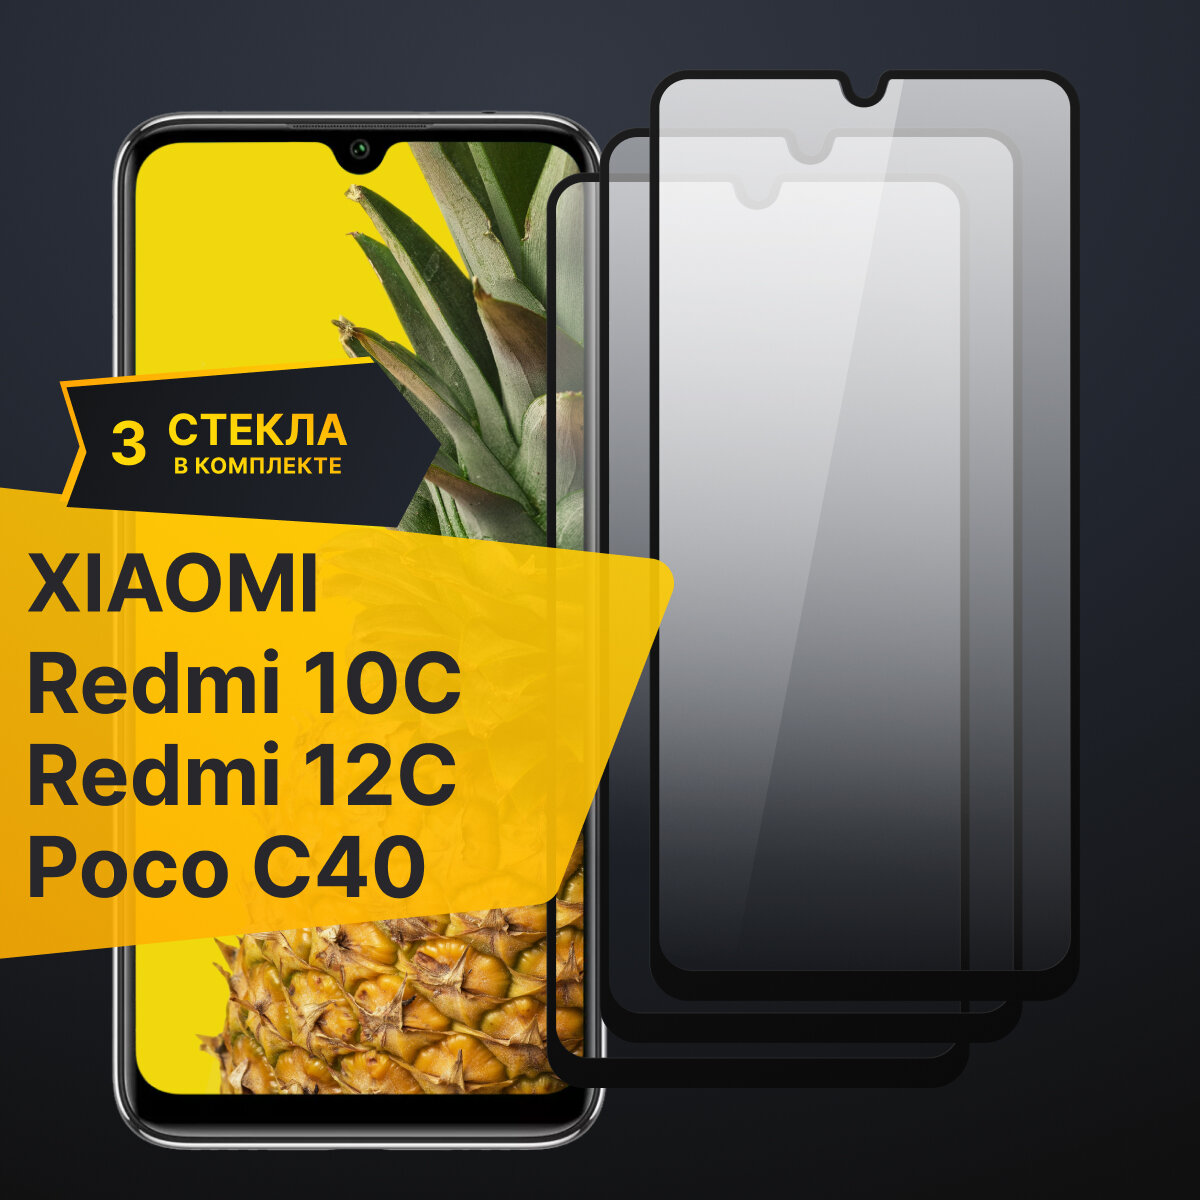 Комплект 3 шт. Противоударное защитное стекло для телефона Xiaomi Redmi 10C, Redmi 12C Poco C40 / Полноклеевое 3D стекло с олеофобным покрытием на смартфон Сяоми Редми 10С, Редми 12С и Поко С40 / С черной рамкой